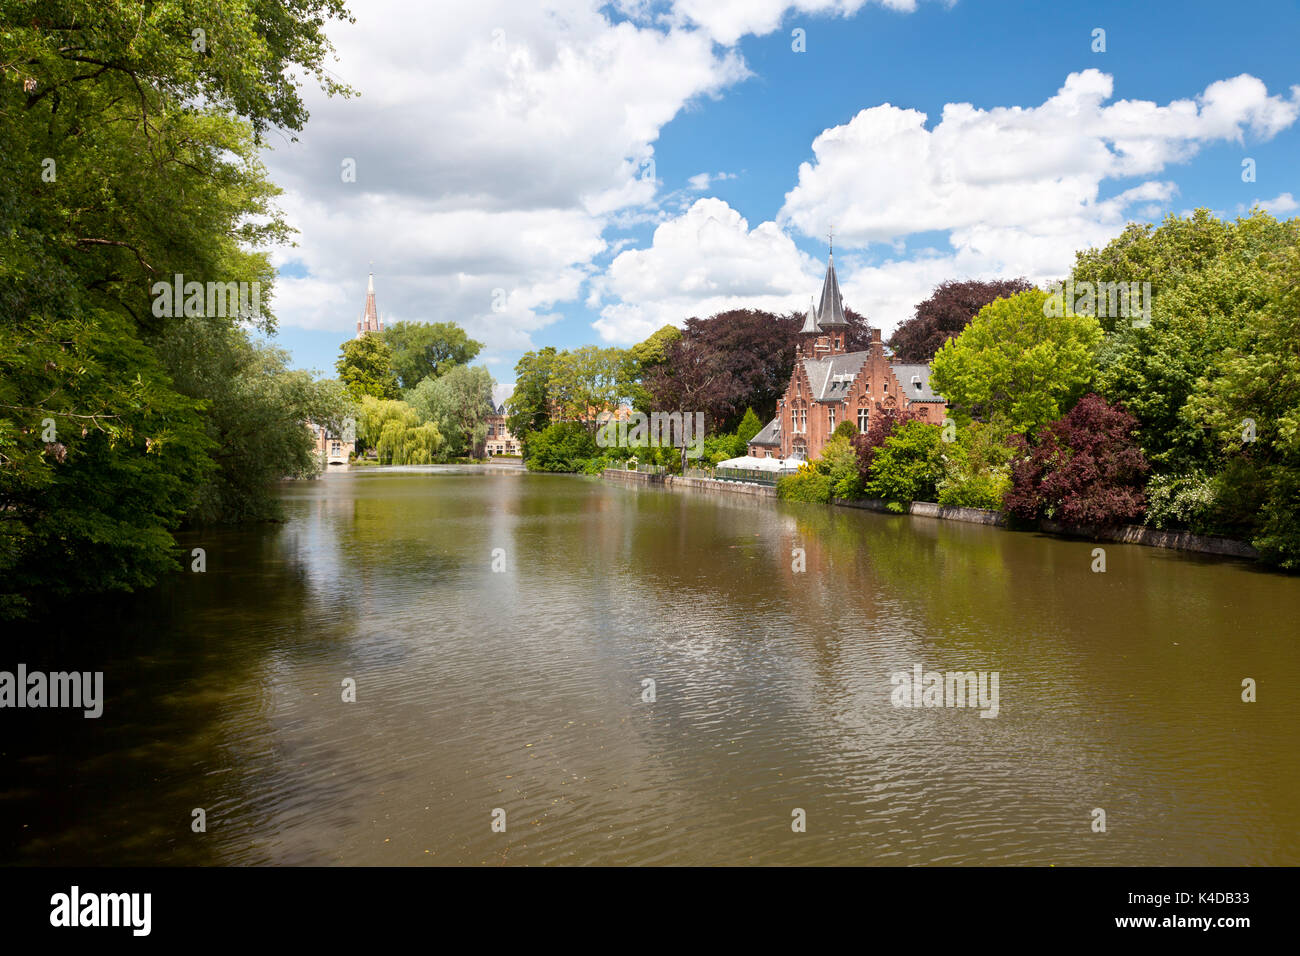 Le romantique lac Minnewater et sa célèbre maison avec des tours dans le sud de Bruges, Belgique. Banque D'Images